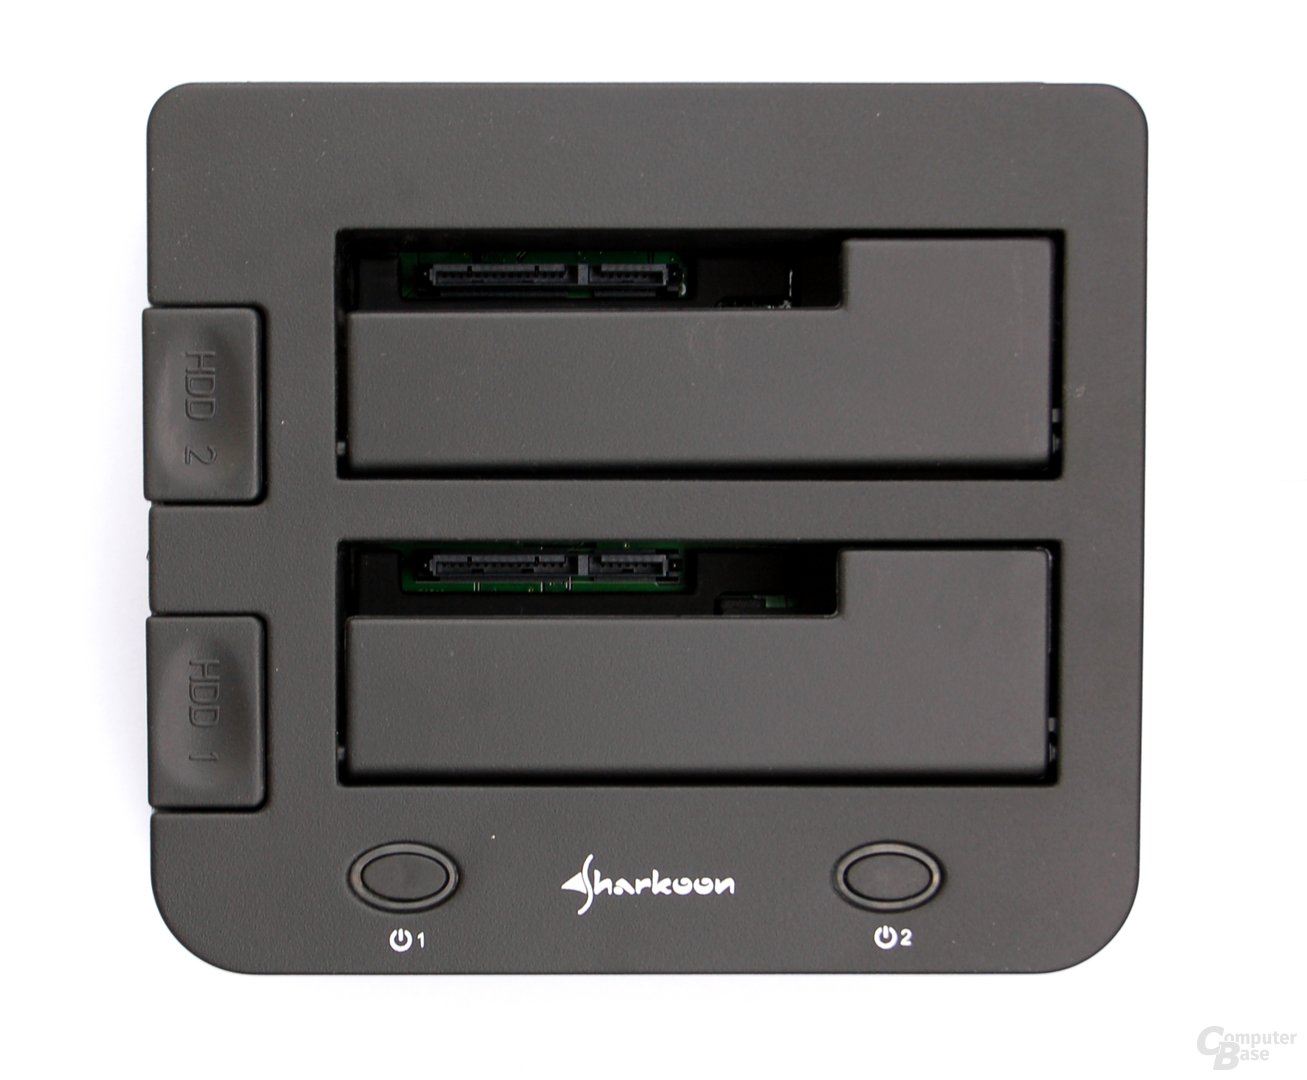 Sharkoon SATA Quickport Duo USB 3.0